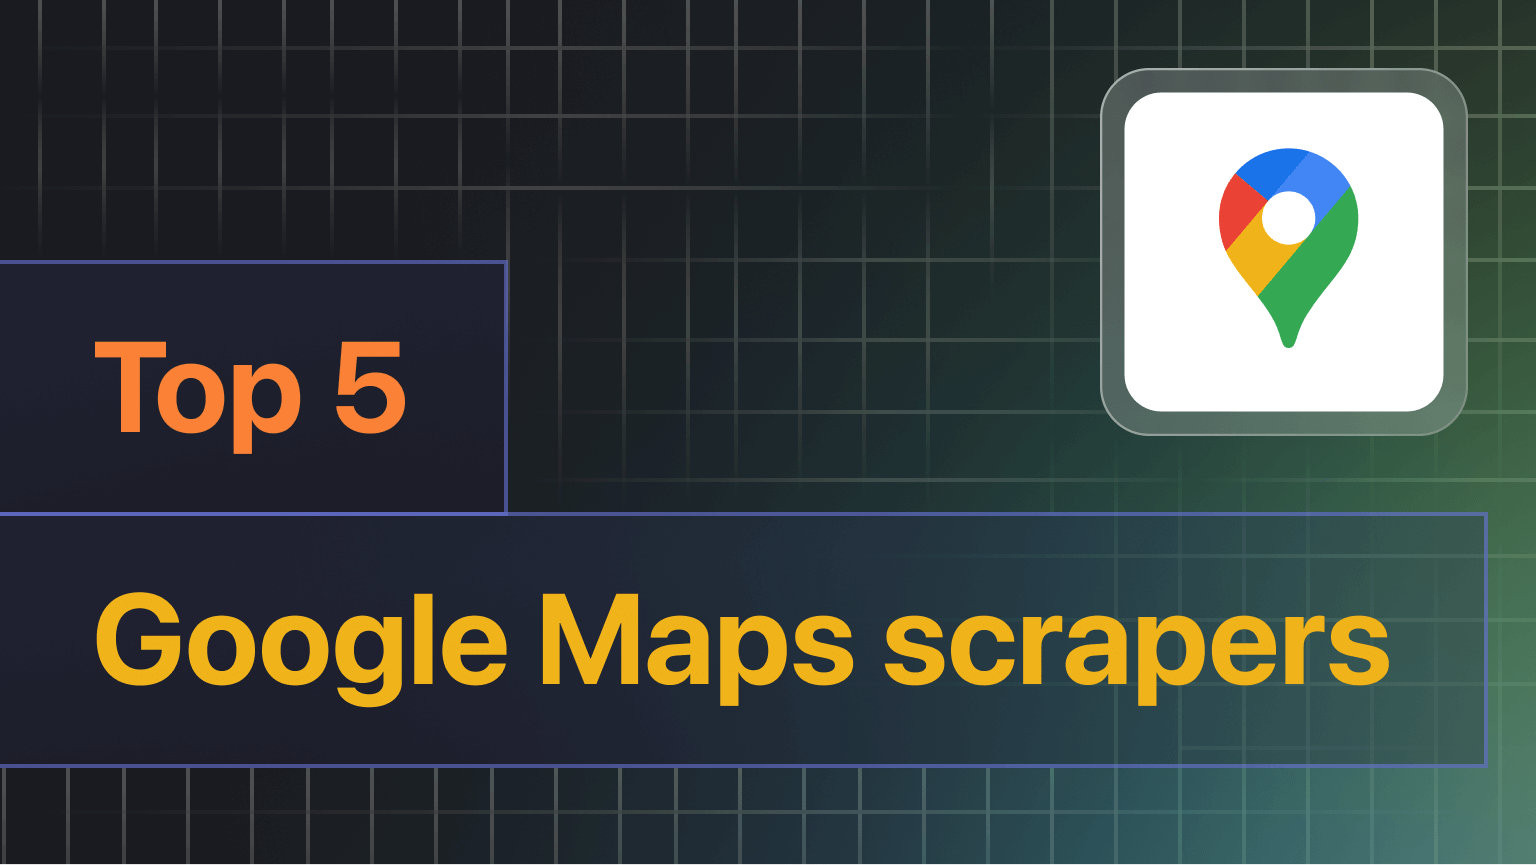 Top 5 Google Maps scrapers